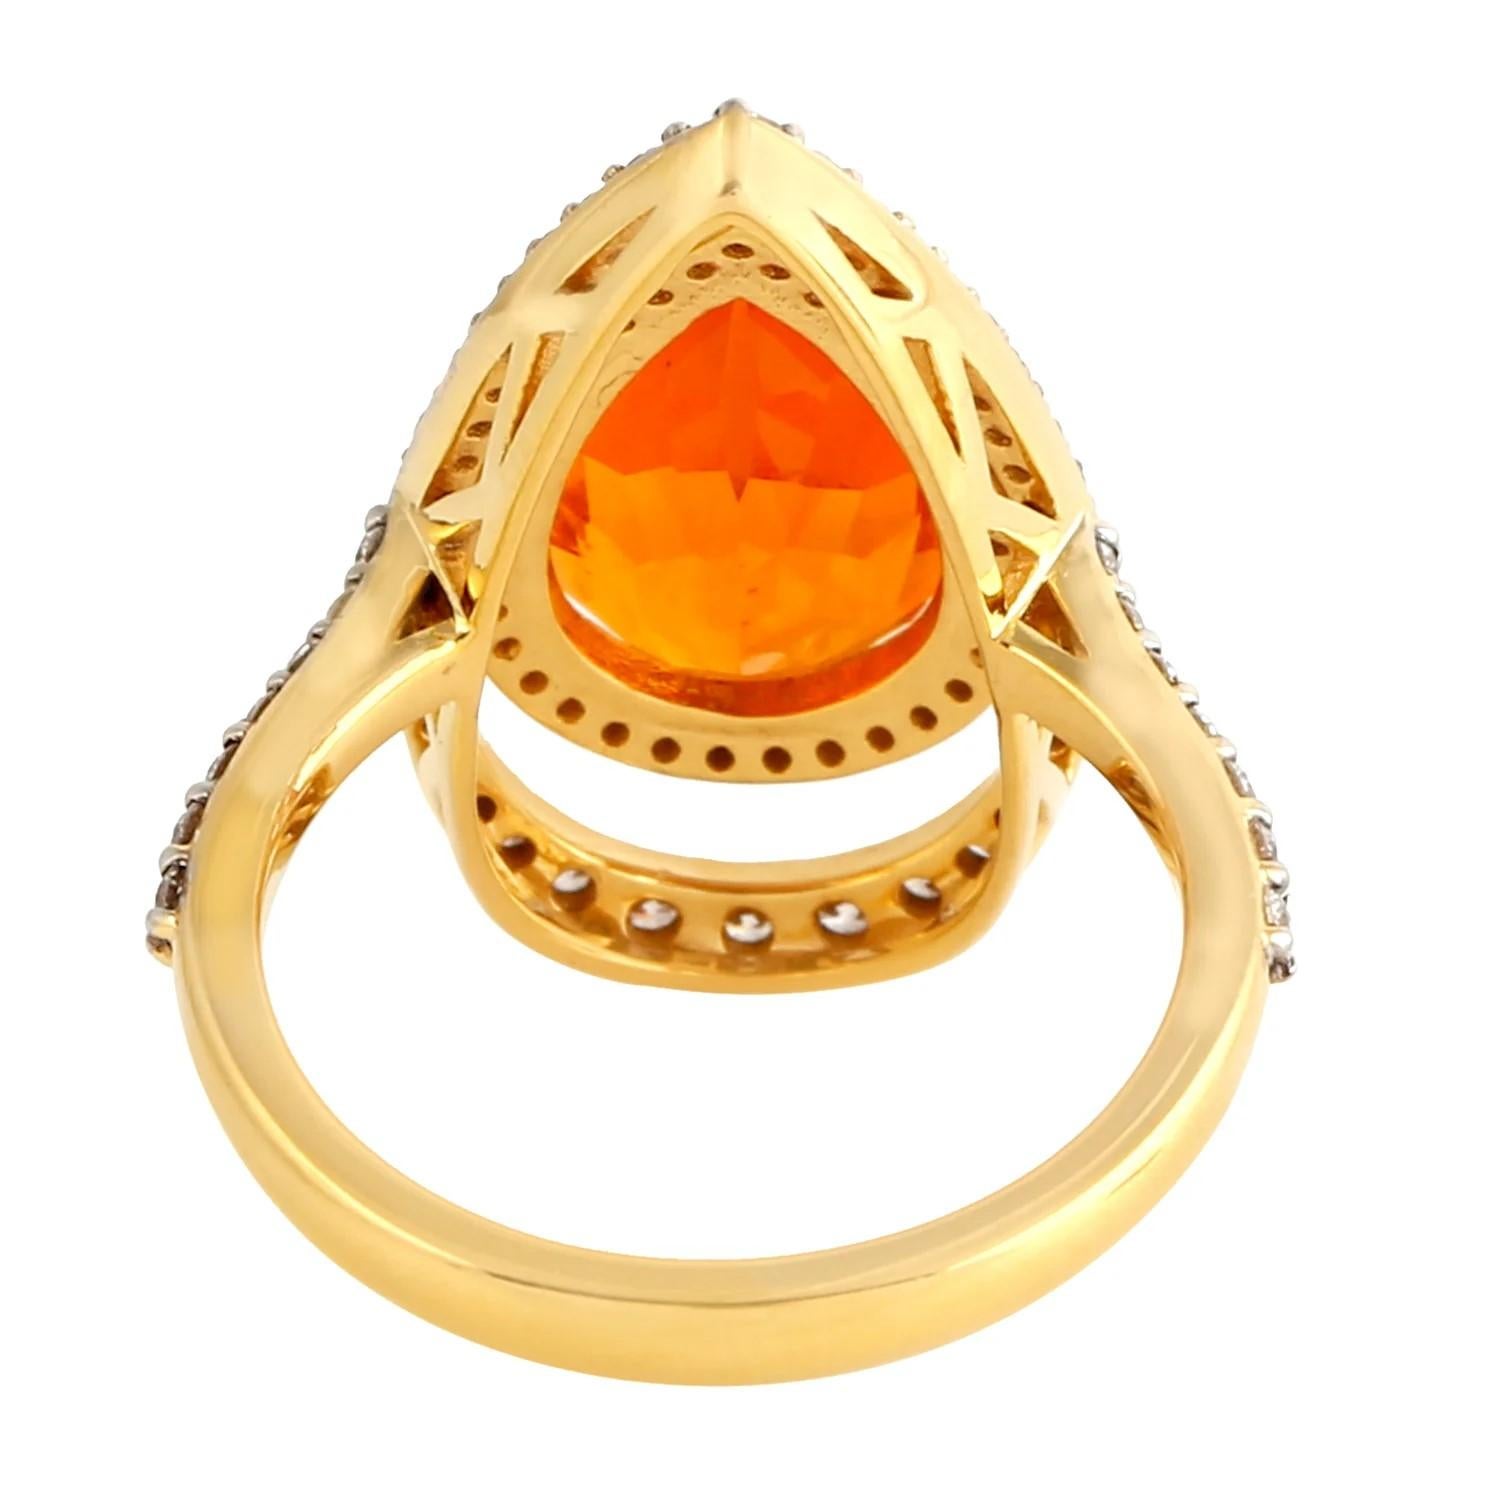 Dieser exquisite Ring ist aus 18-karätigem Gold handgefertigt. Er ist mit 3,06 Karat Feueropal und 0,77 Karat funkelnden Diamanten besetzt.

FOLLOW MEGHNA JEWELS Storefront, um die neueste Collection'S und exklusive Stücke zu sehen. Meghna Jewels